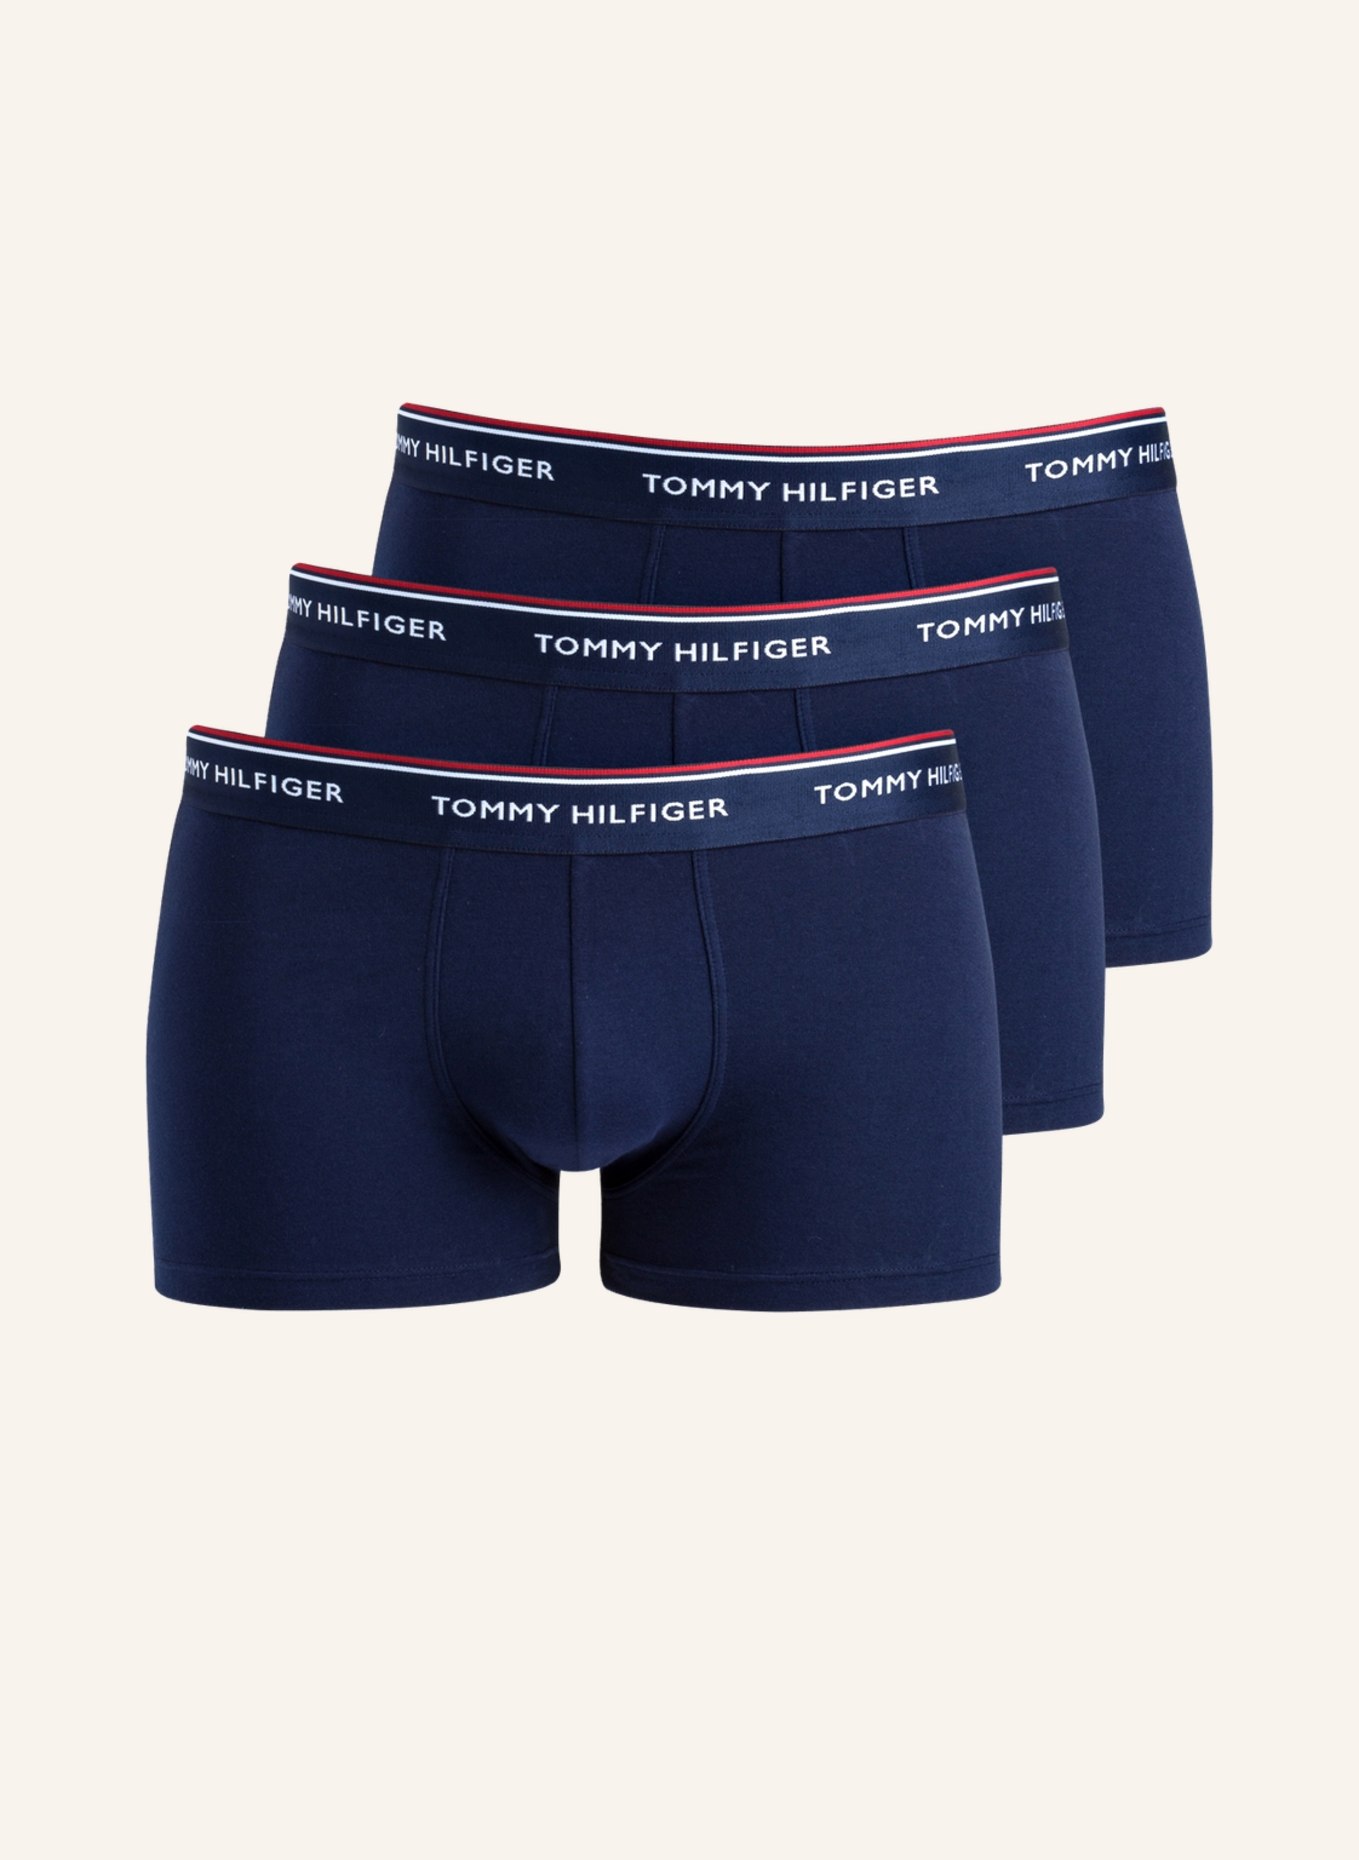 TOMMY HILFIGER 3er-Pack Boxershorts, Farbe: NAVY (Bild 1)